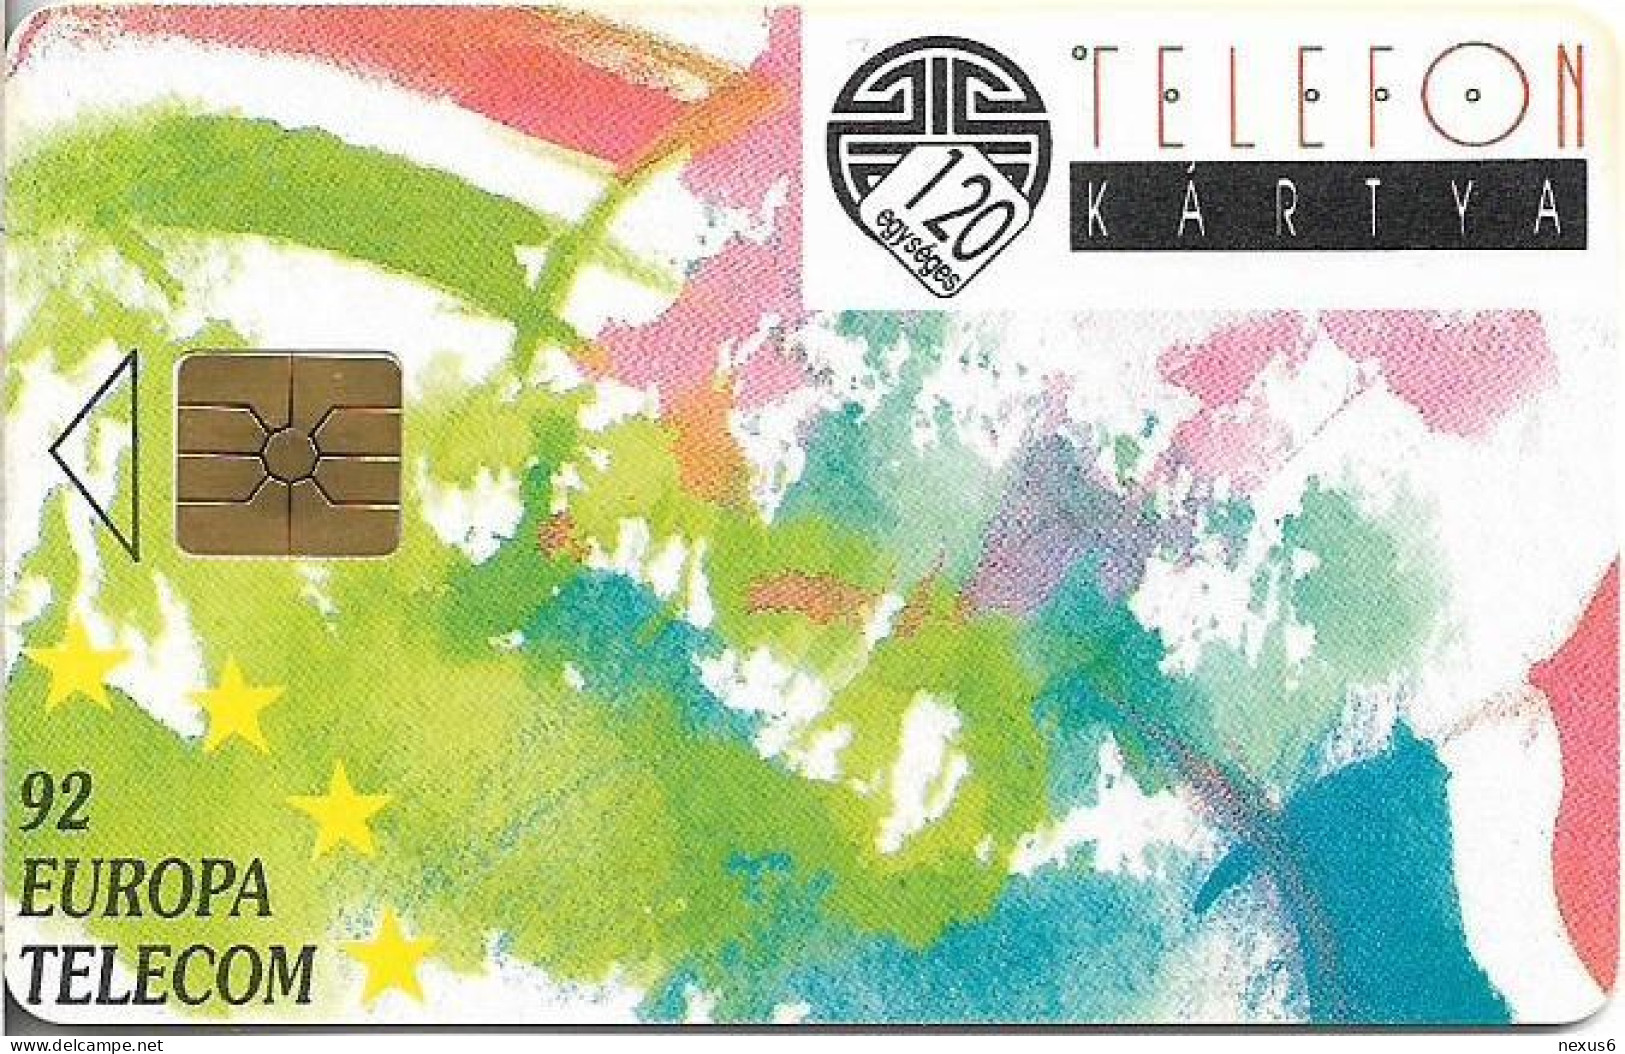 Hungary - Matáv - Europa Telecom 92, Gem1B Not Symm. Red, With Transp. Moreno, 10.1992, 120U, 10.000ex, Used - Hungría